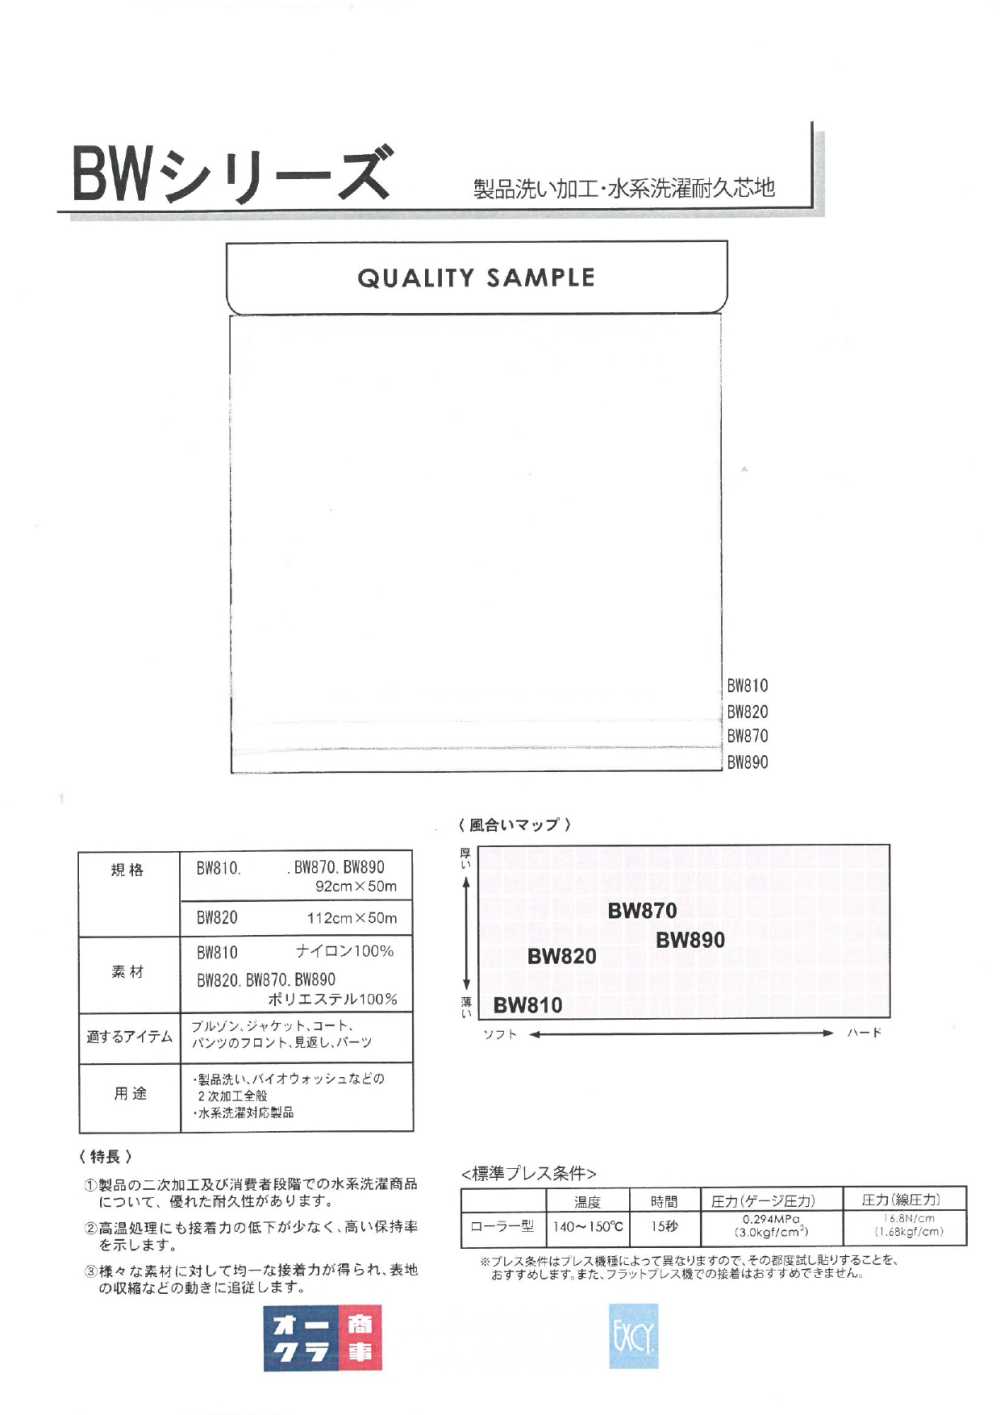 BW870 Gia Công Giặt Sản Phẩm/giặt Bằng Nước Có Lớp Lót Bền (30D)[Xen Kẽ] Nittobo